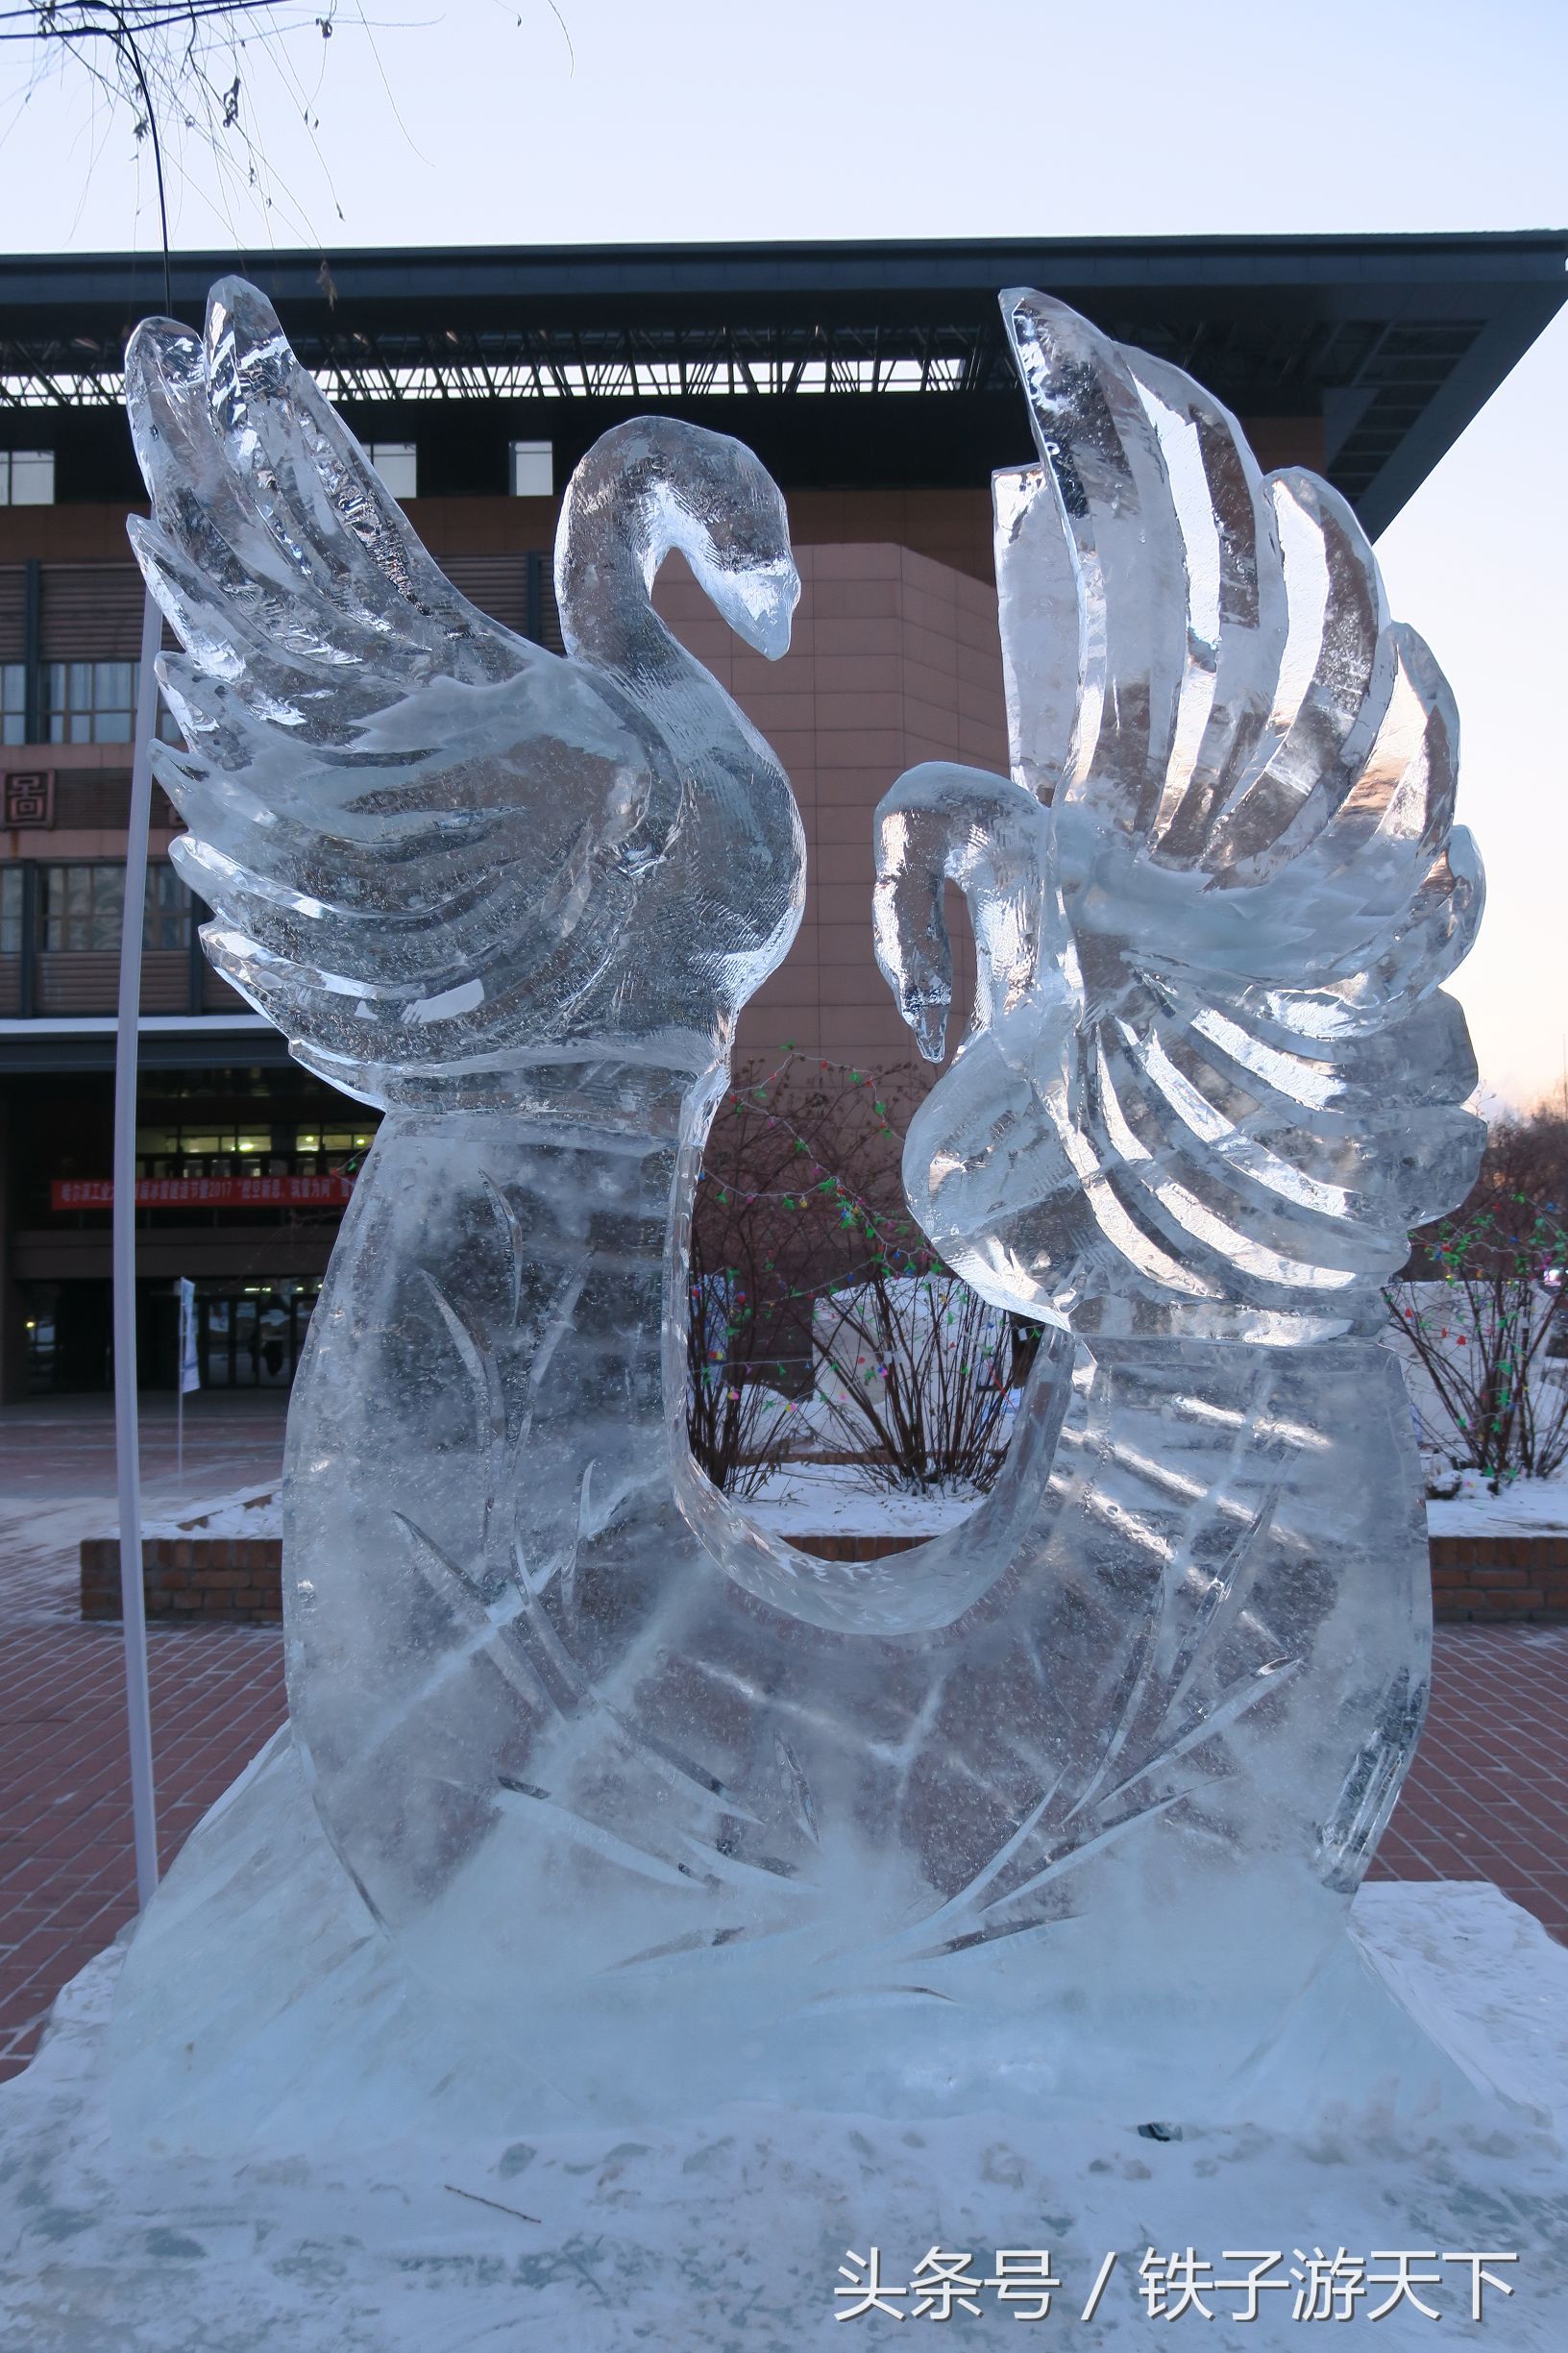 哈尔滨工业大学的"冰雕艺术展"